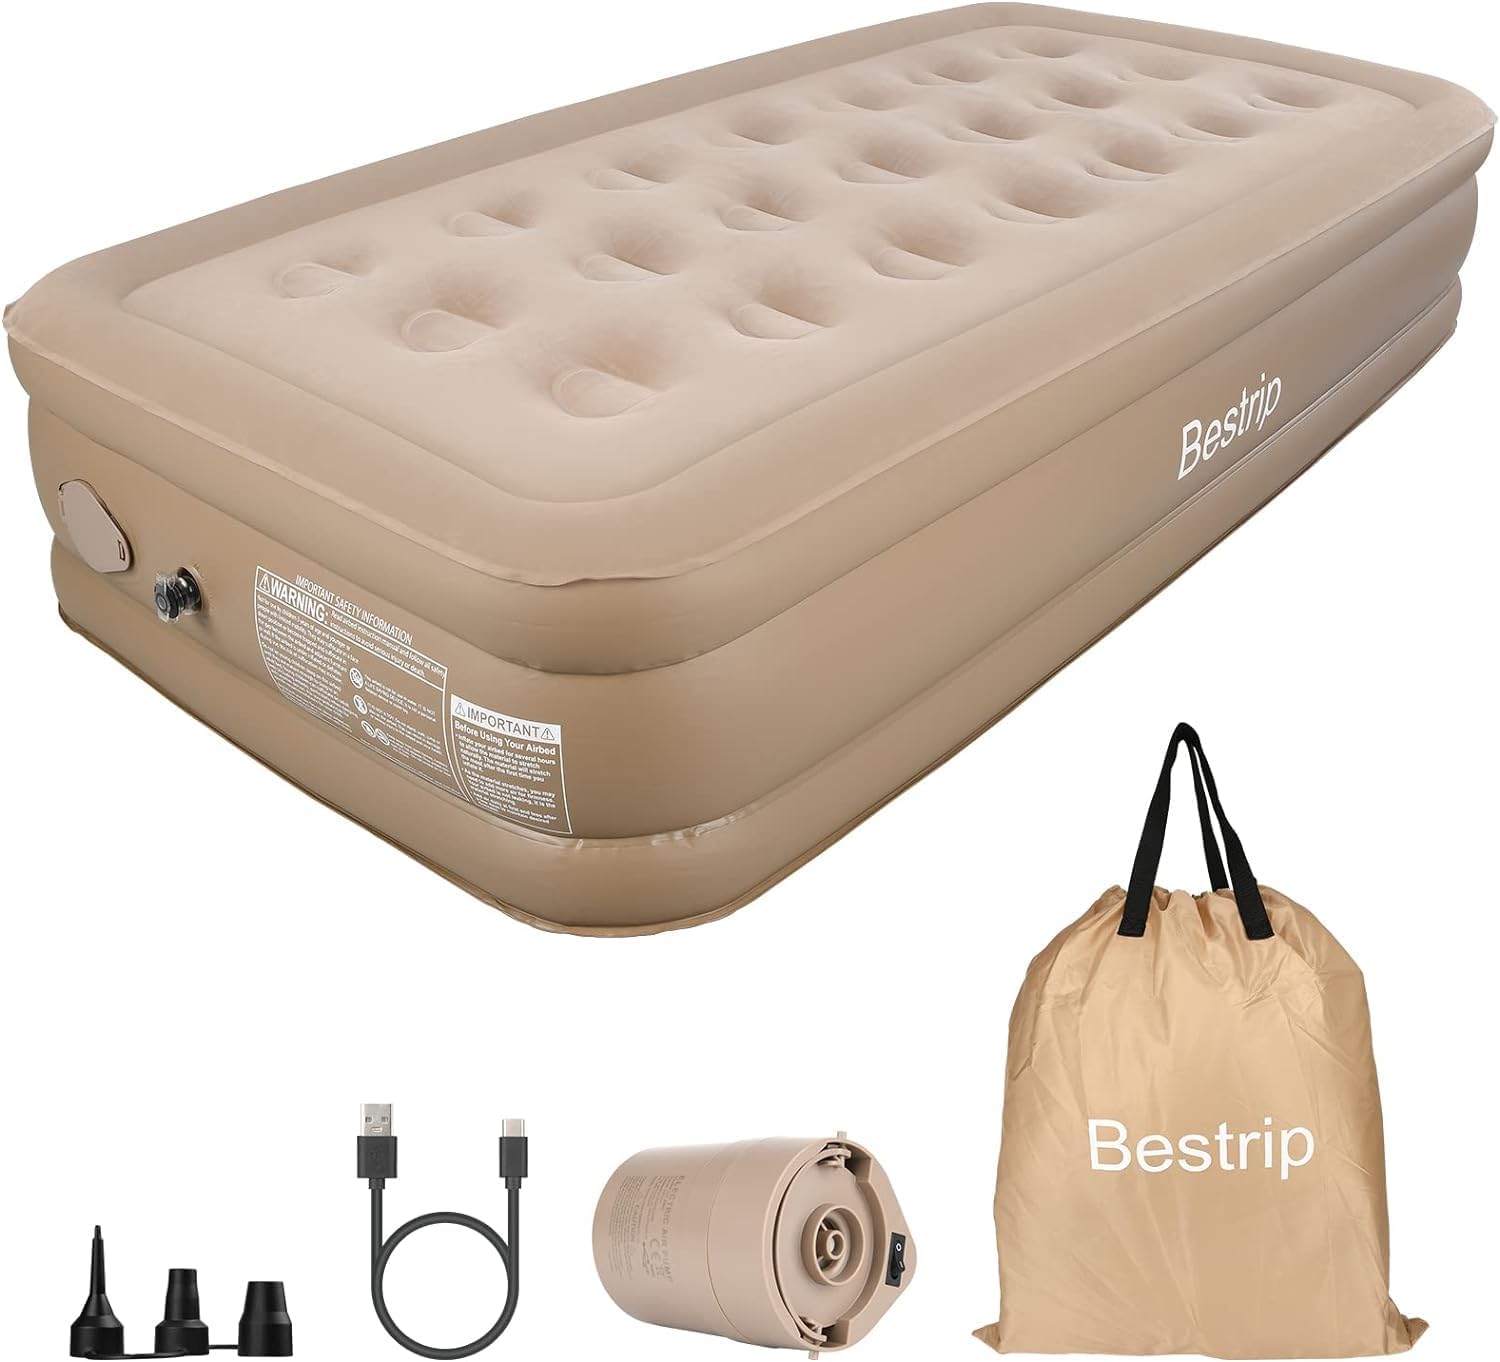 Comprar colchón hinchable Bestrip BP900 | El mejor para tu descanso